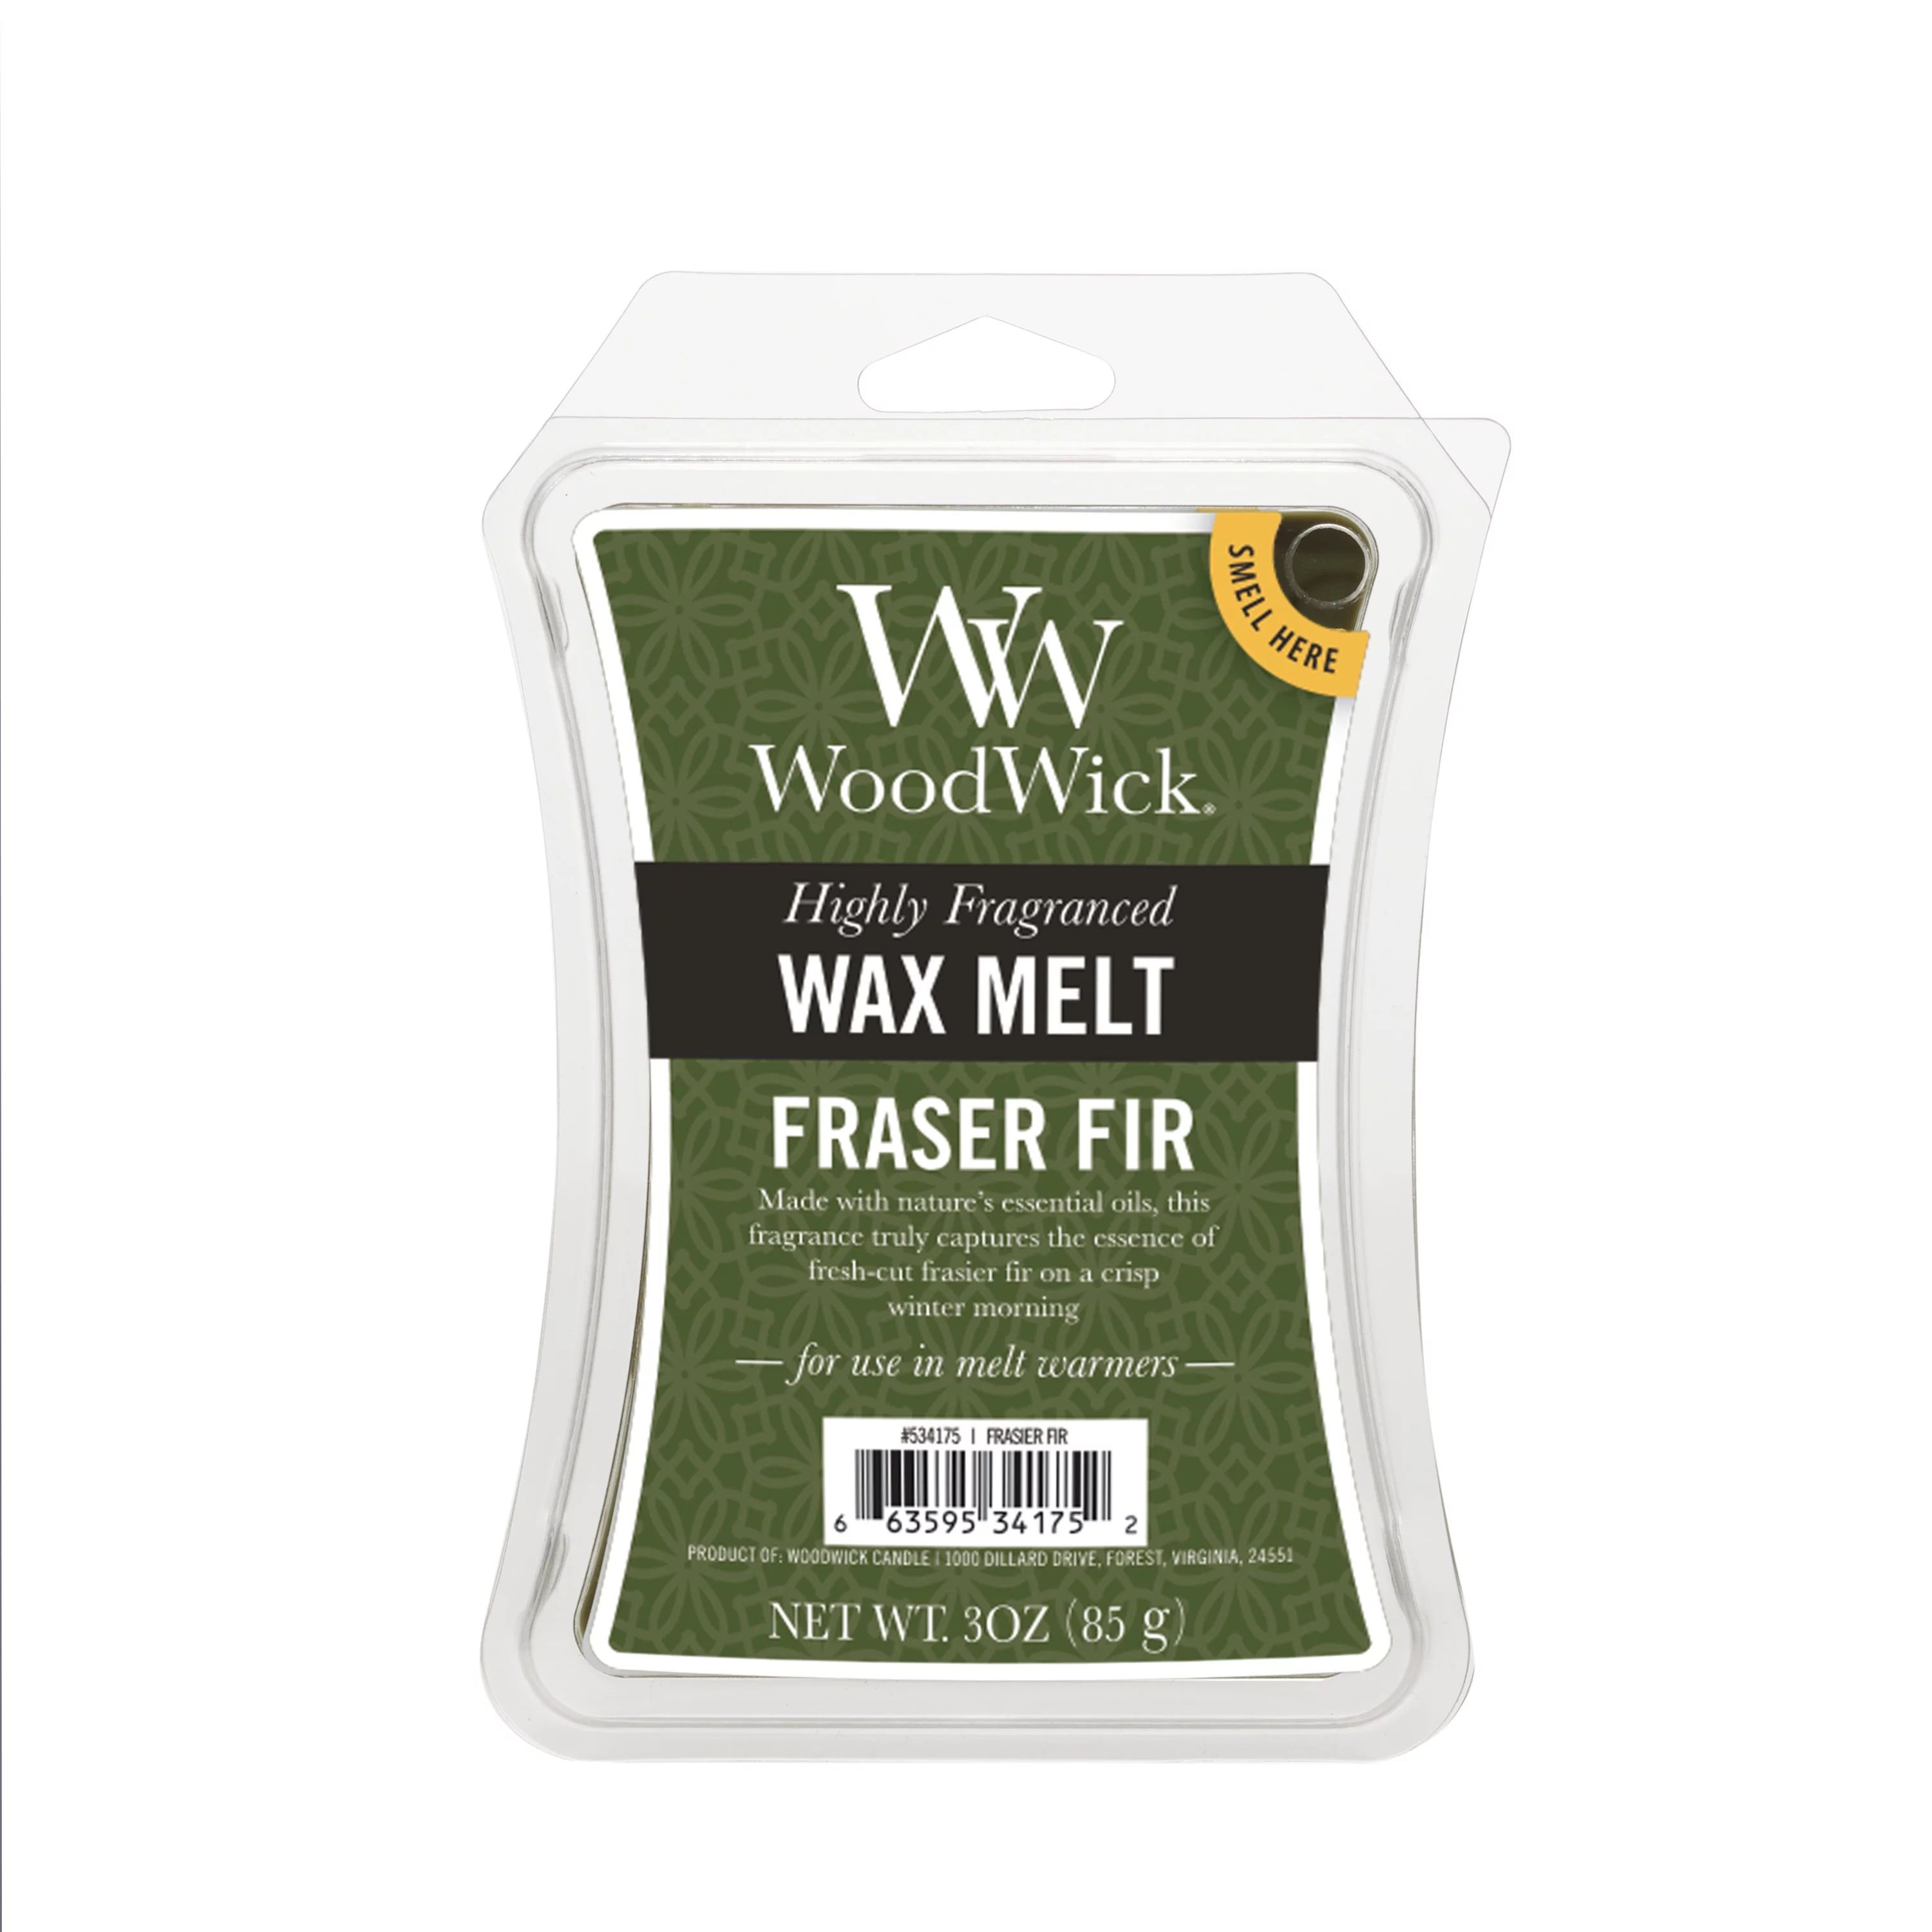 Woodwick Fraser Fir Wax Melt - 3 oz - Walmart.com | Walmart (US)